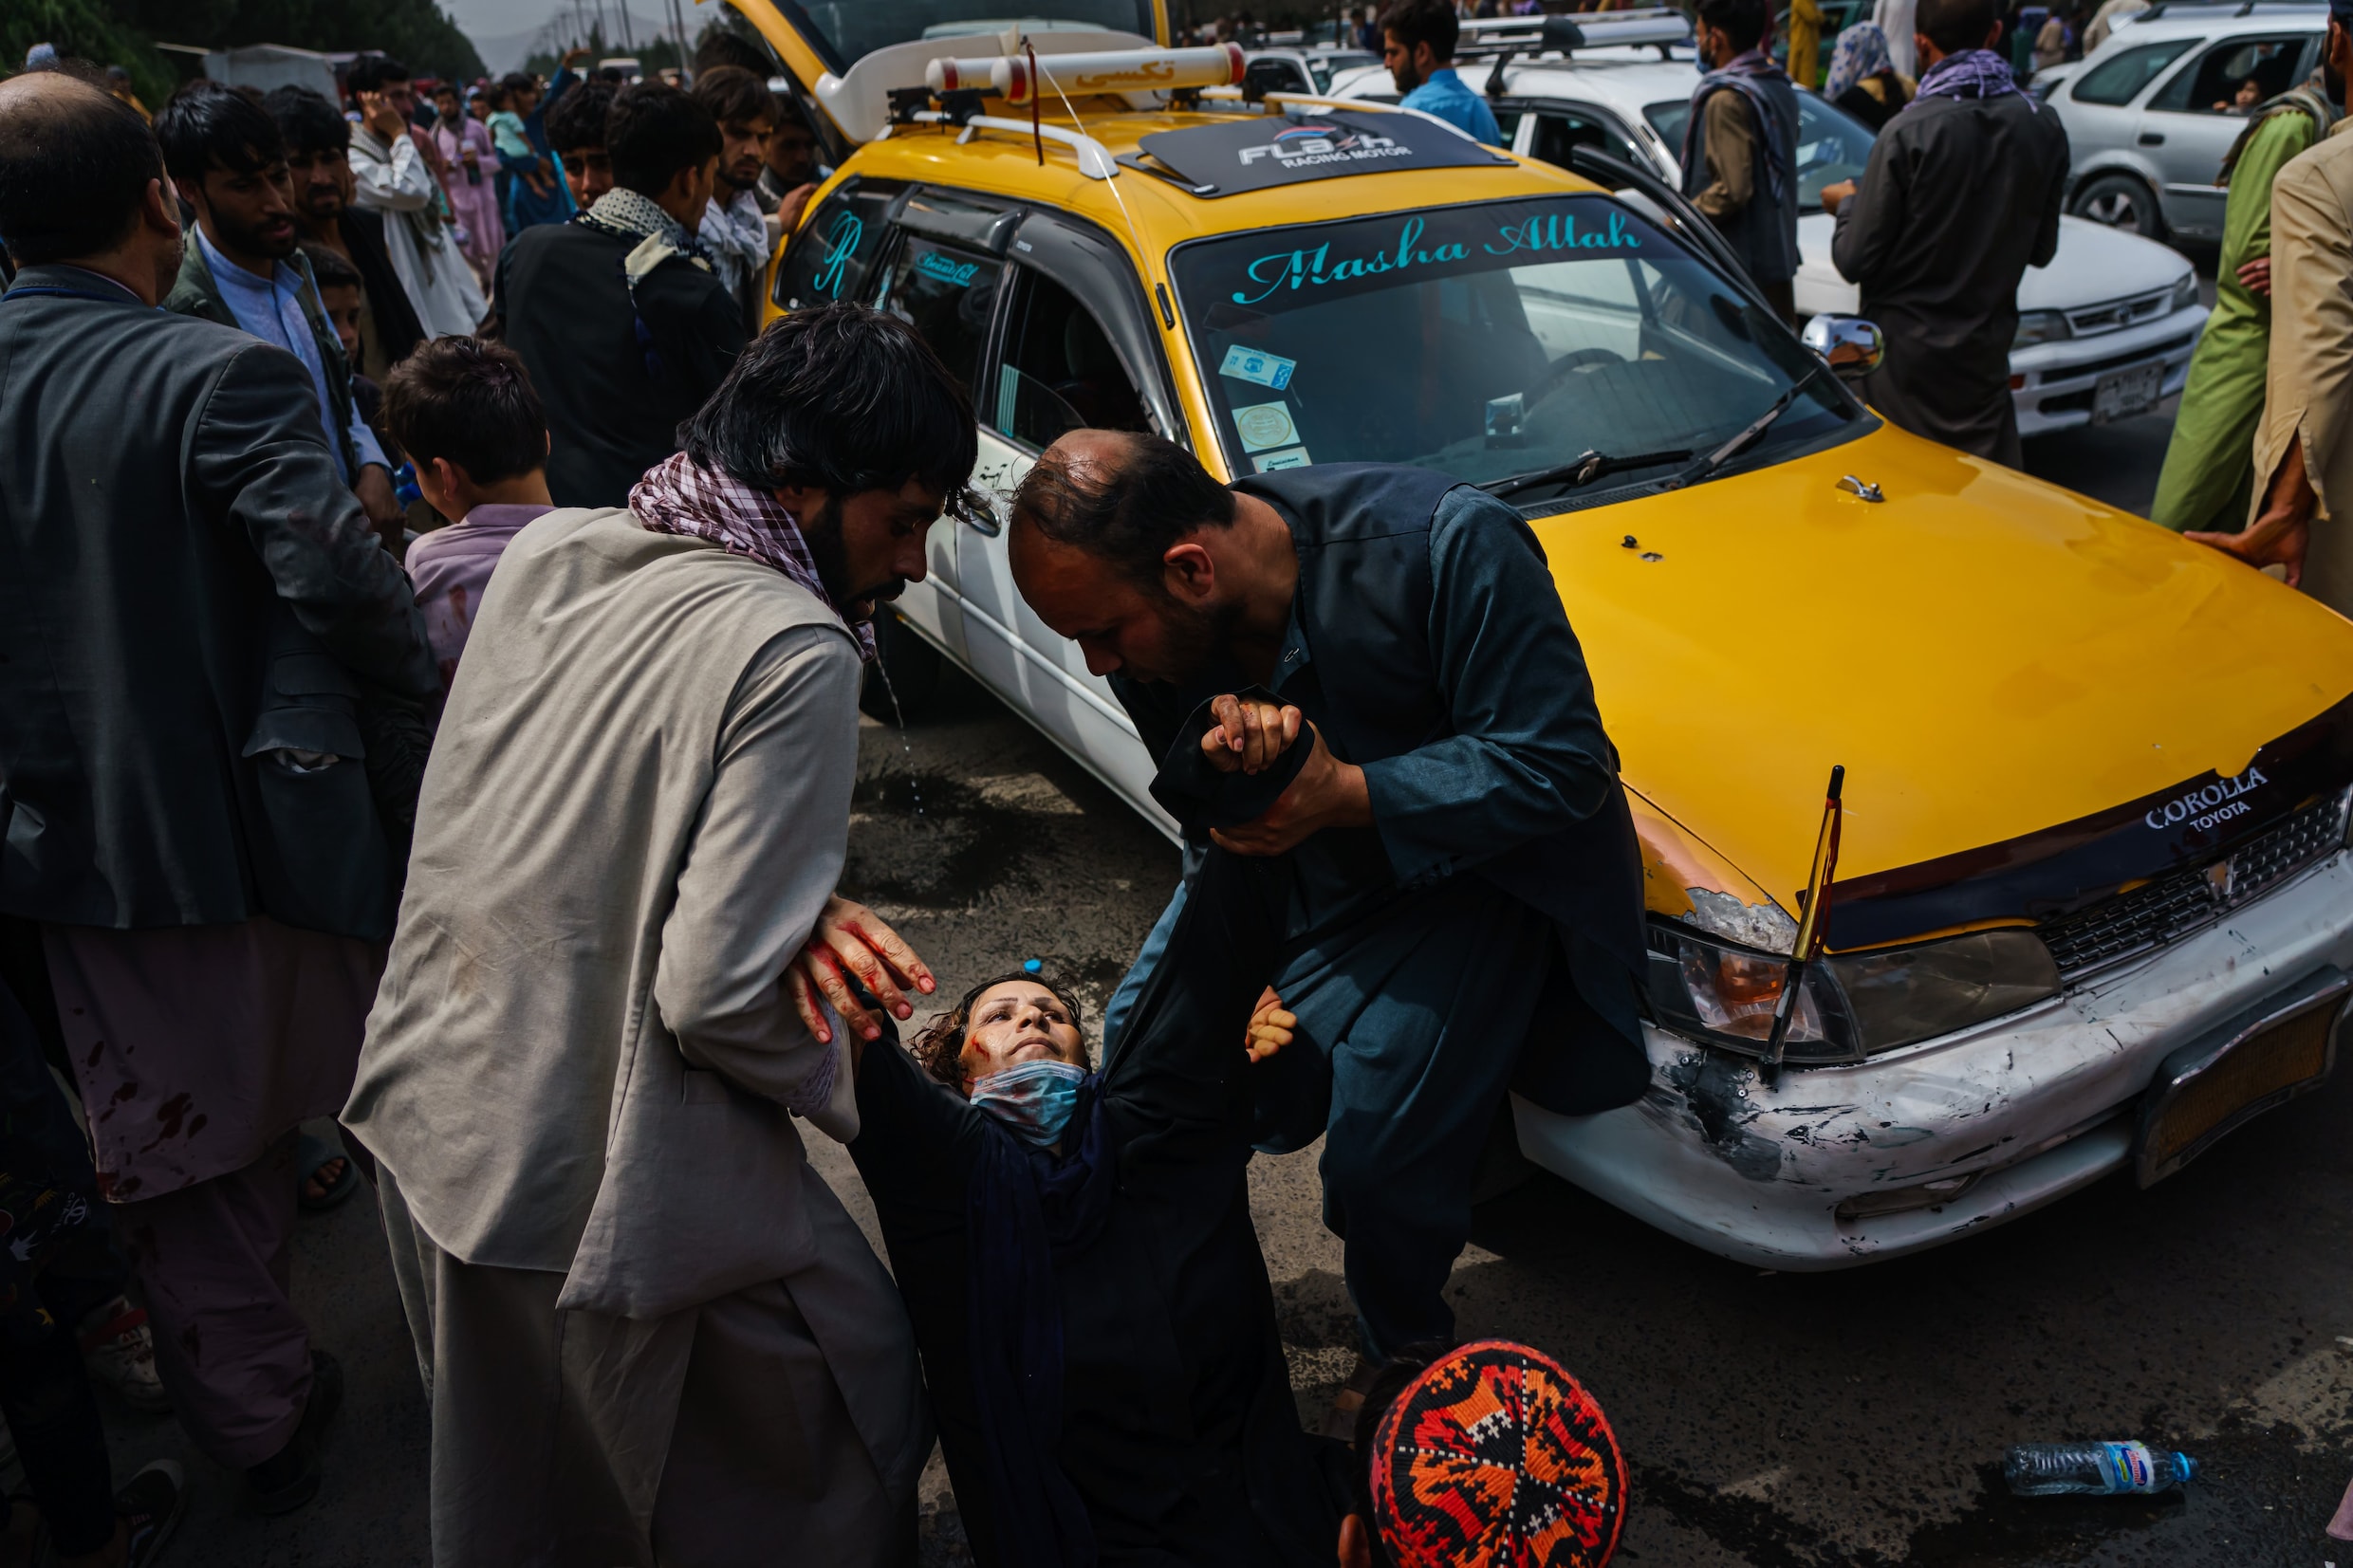 Foto’s tonen hoe taliban tekeergaan aan ‘vrije doorgang’ naar luchthaven Kaboel